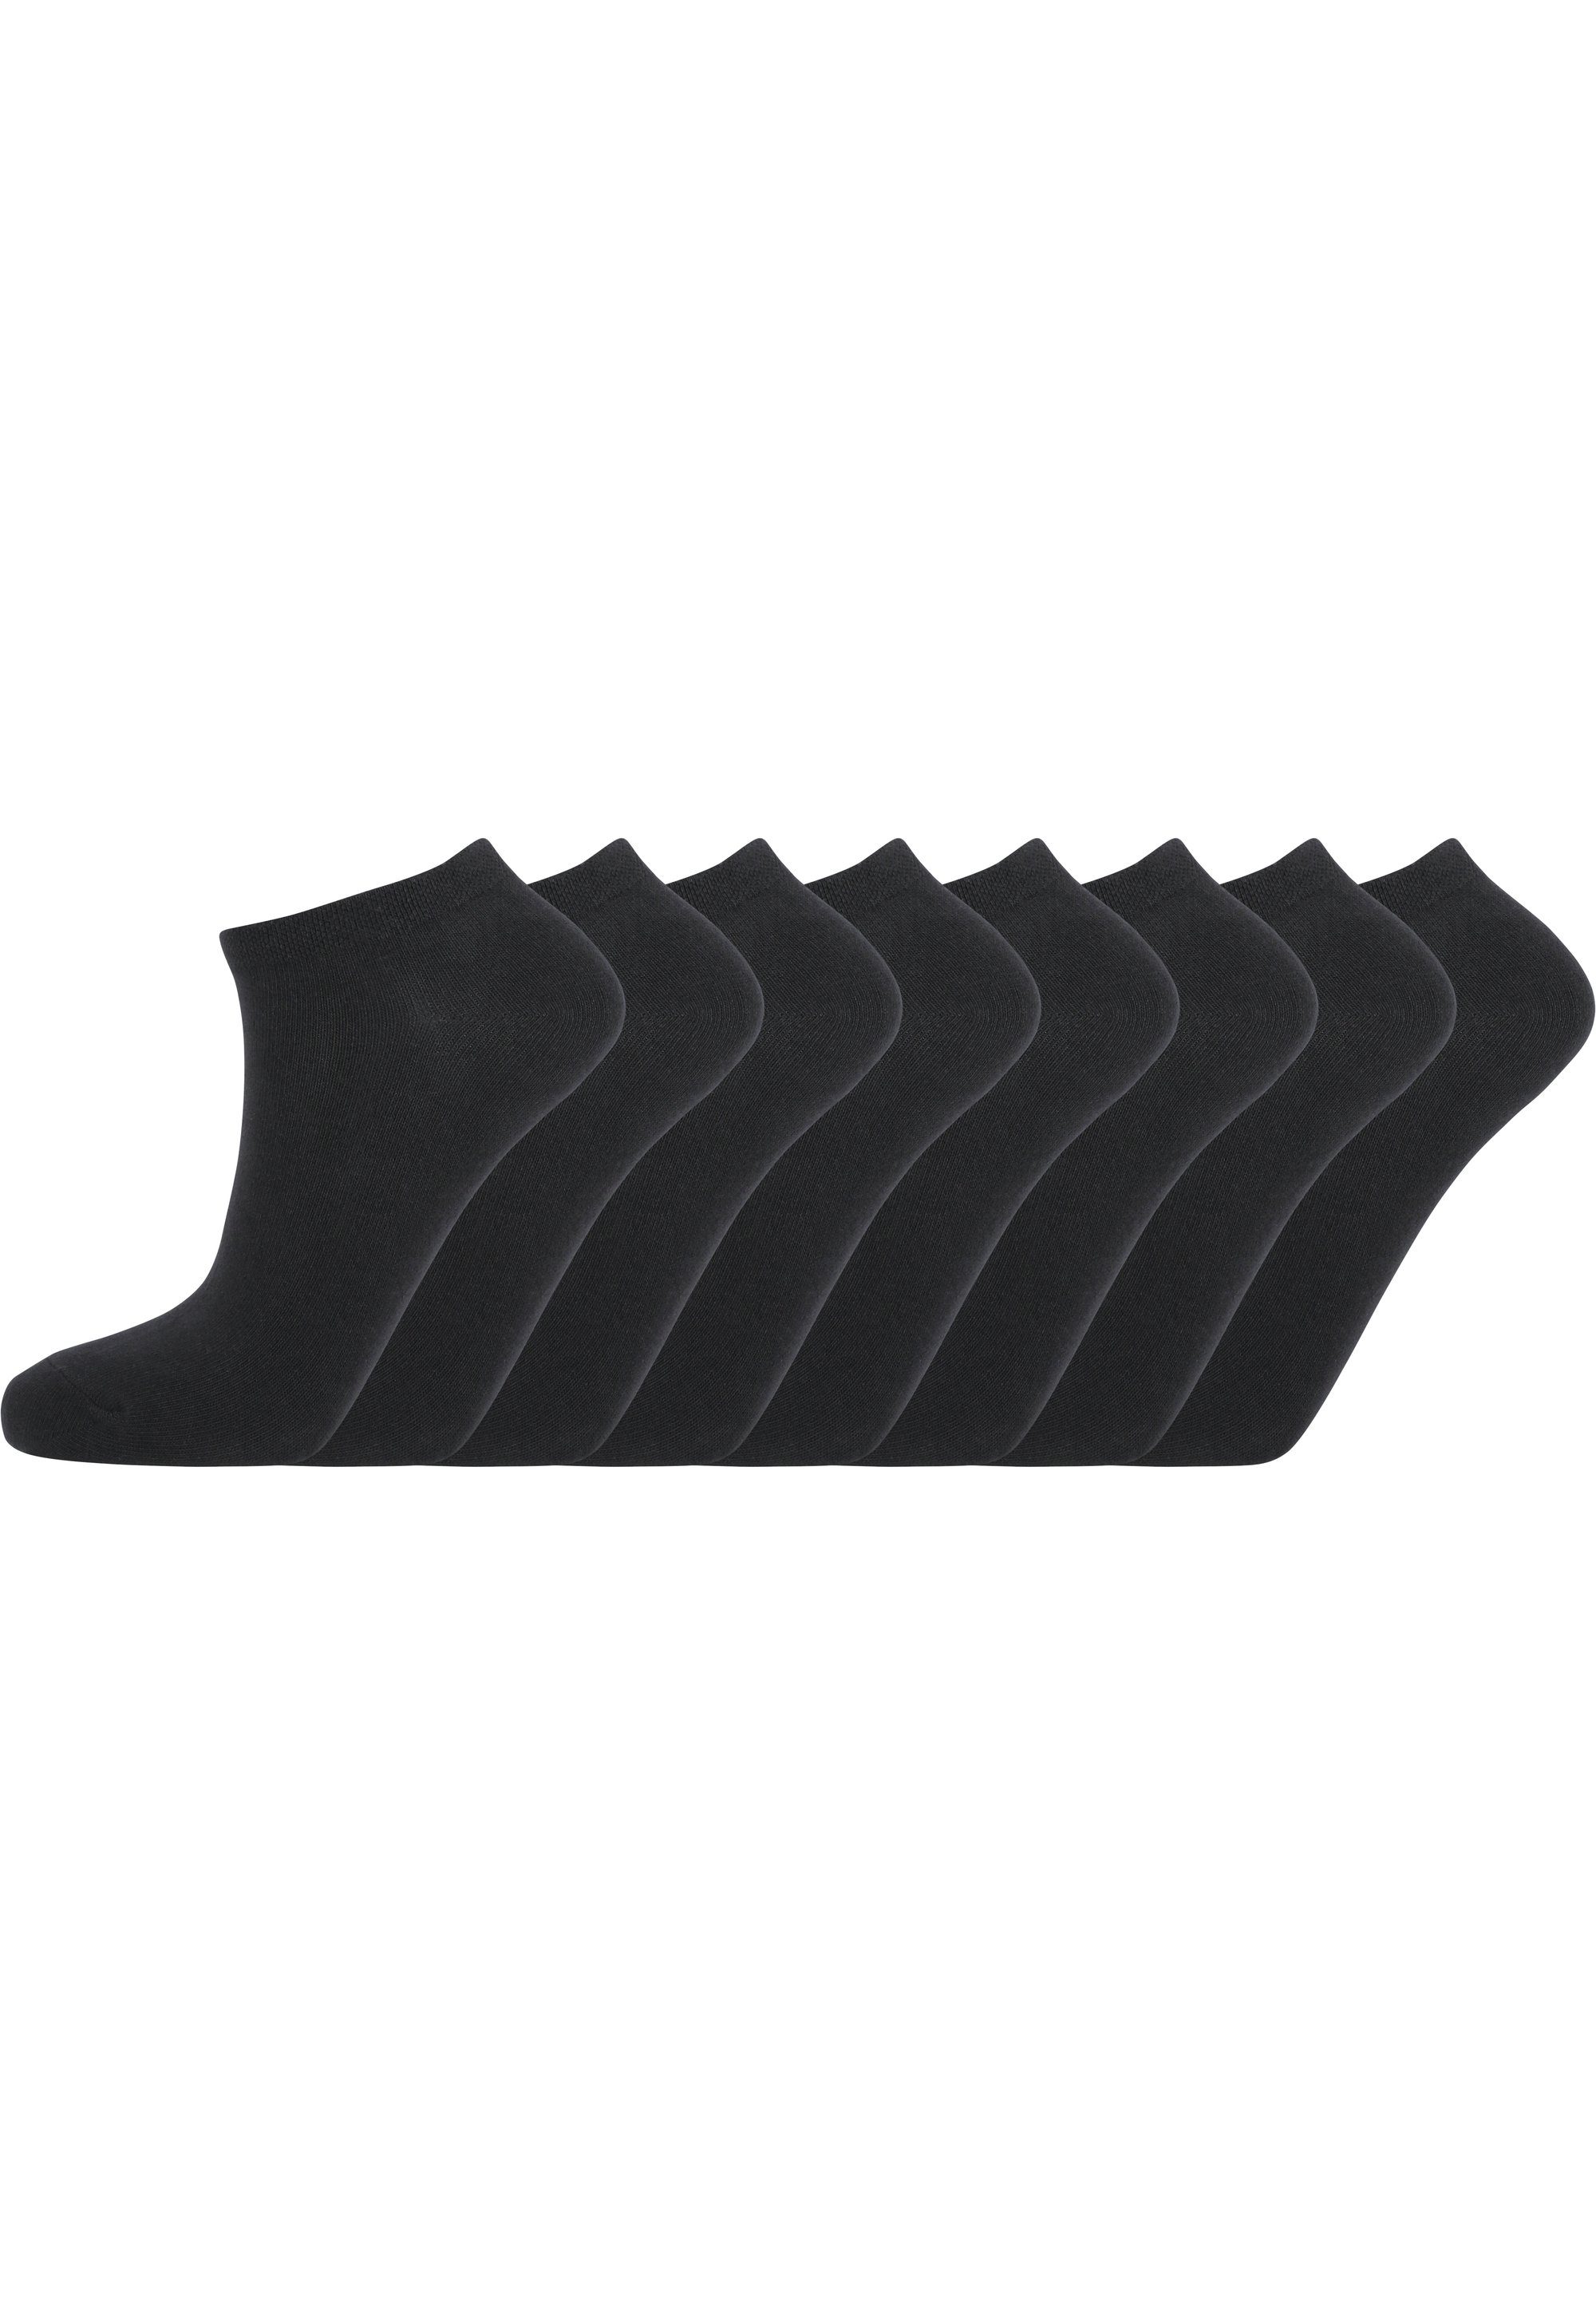 ENDURANCE Socken Mallorca in schwarz atmungsaktiver (8-Paar) Qualität